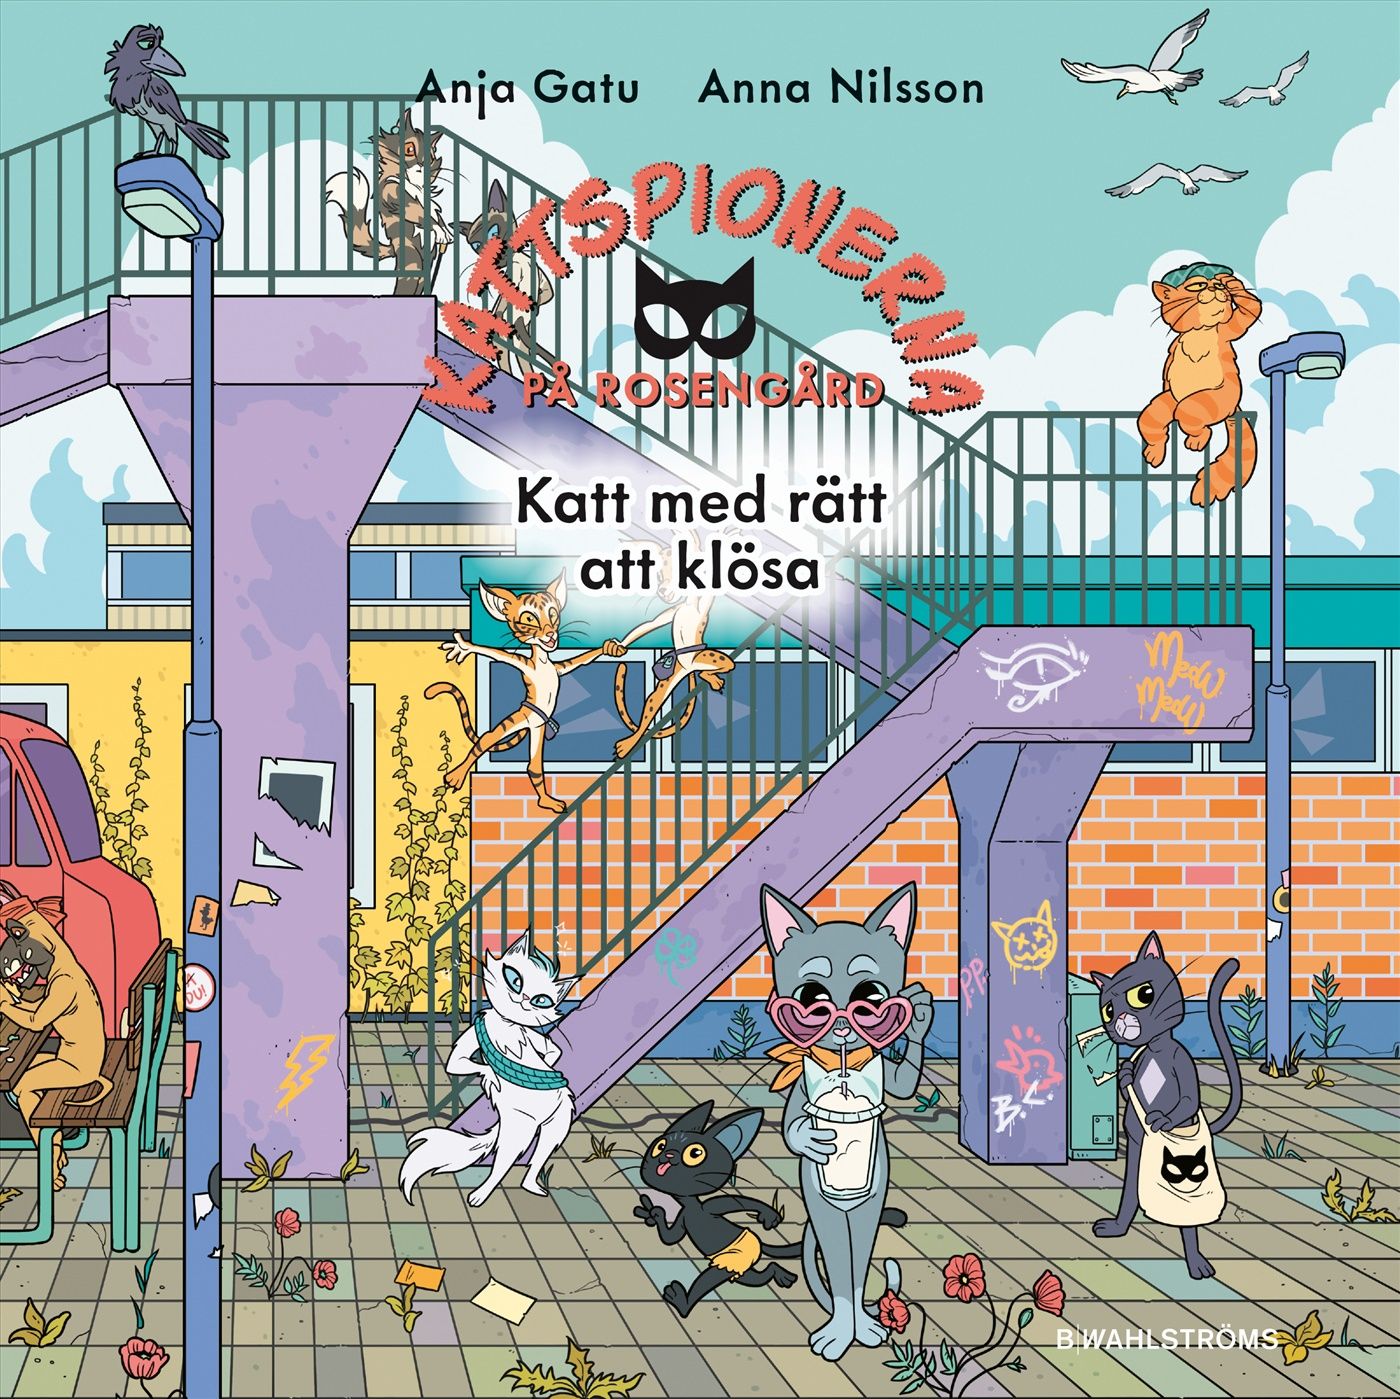 Katt med rätt att klösa, audiobook by Anja Gatu